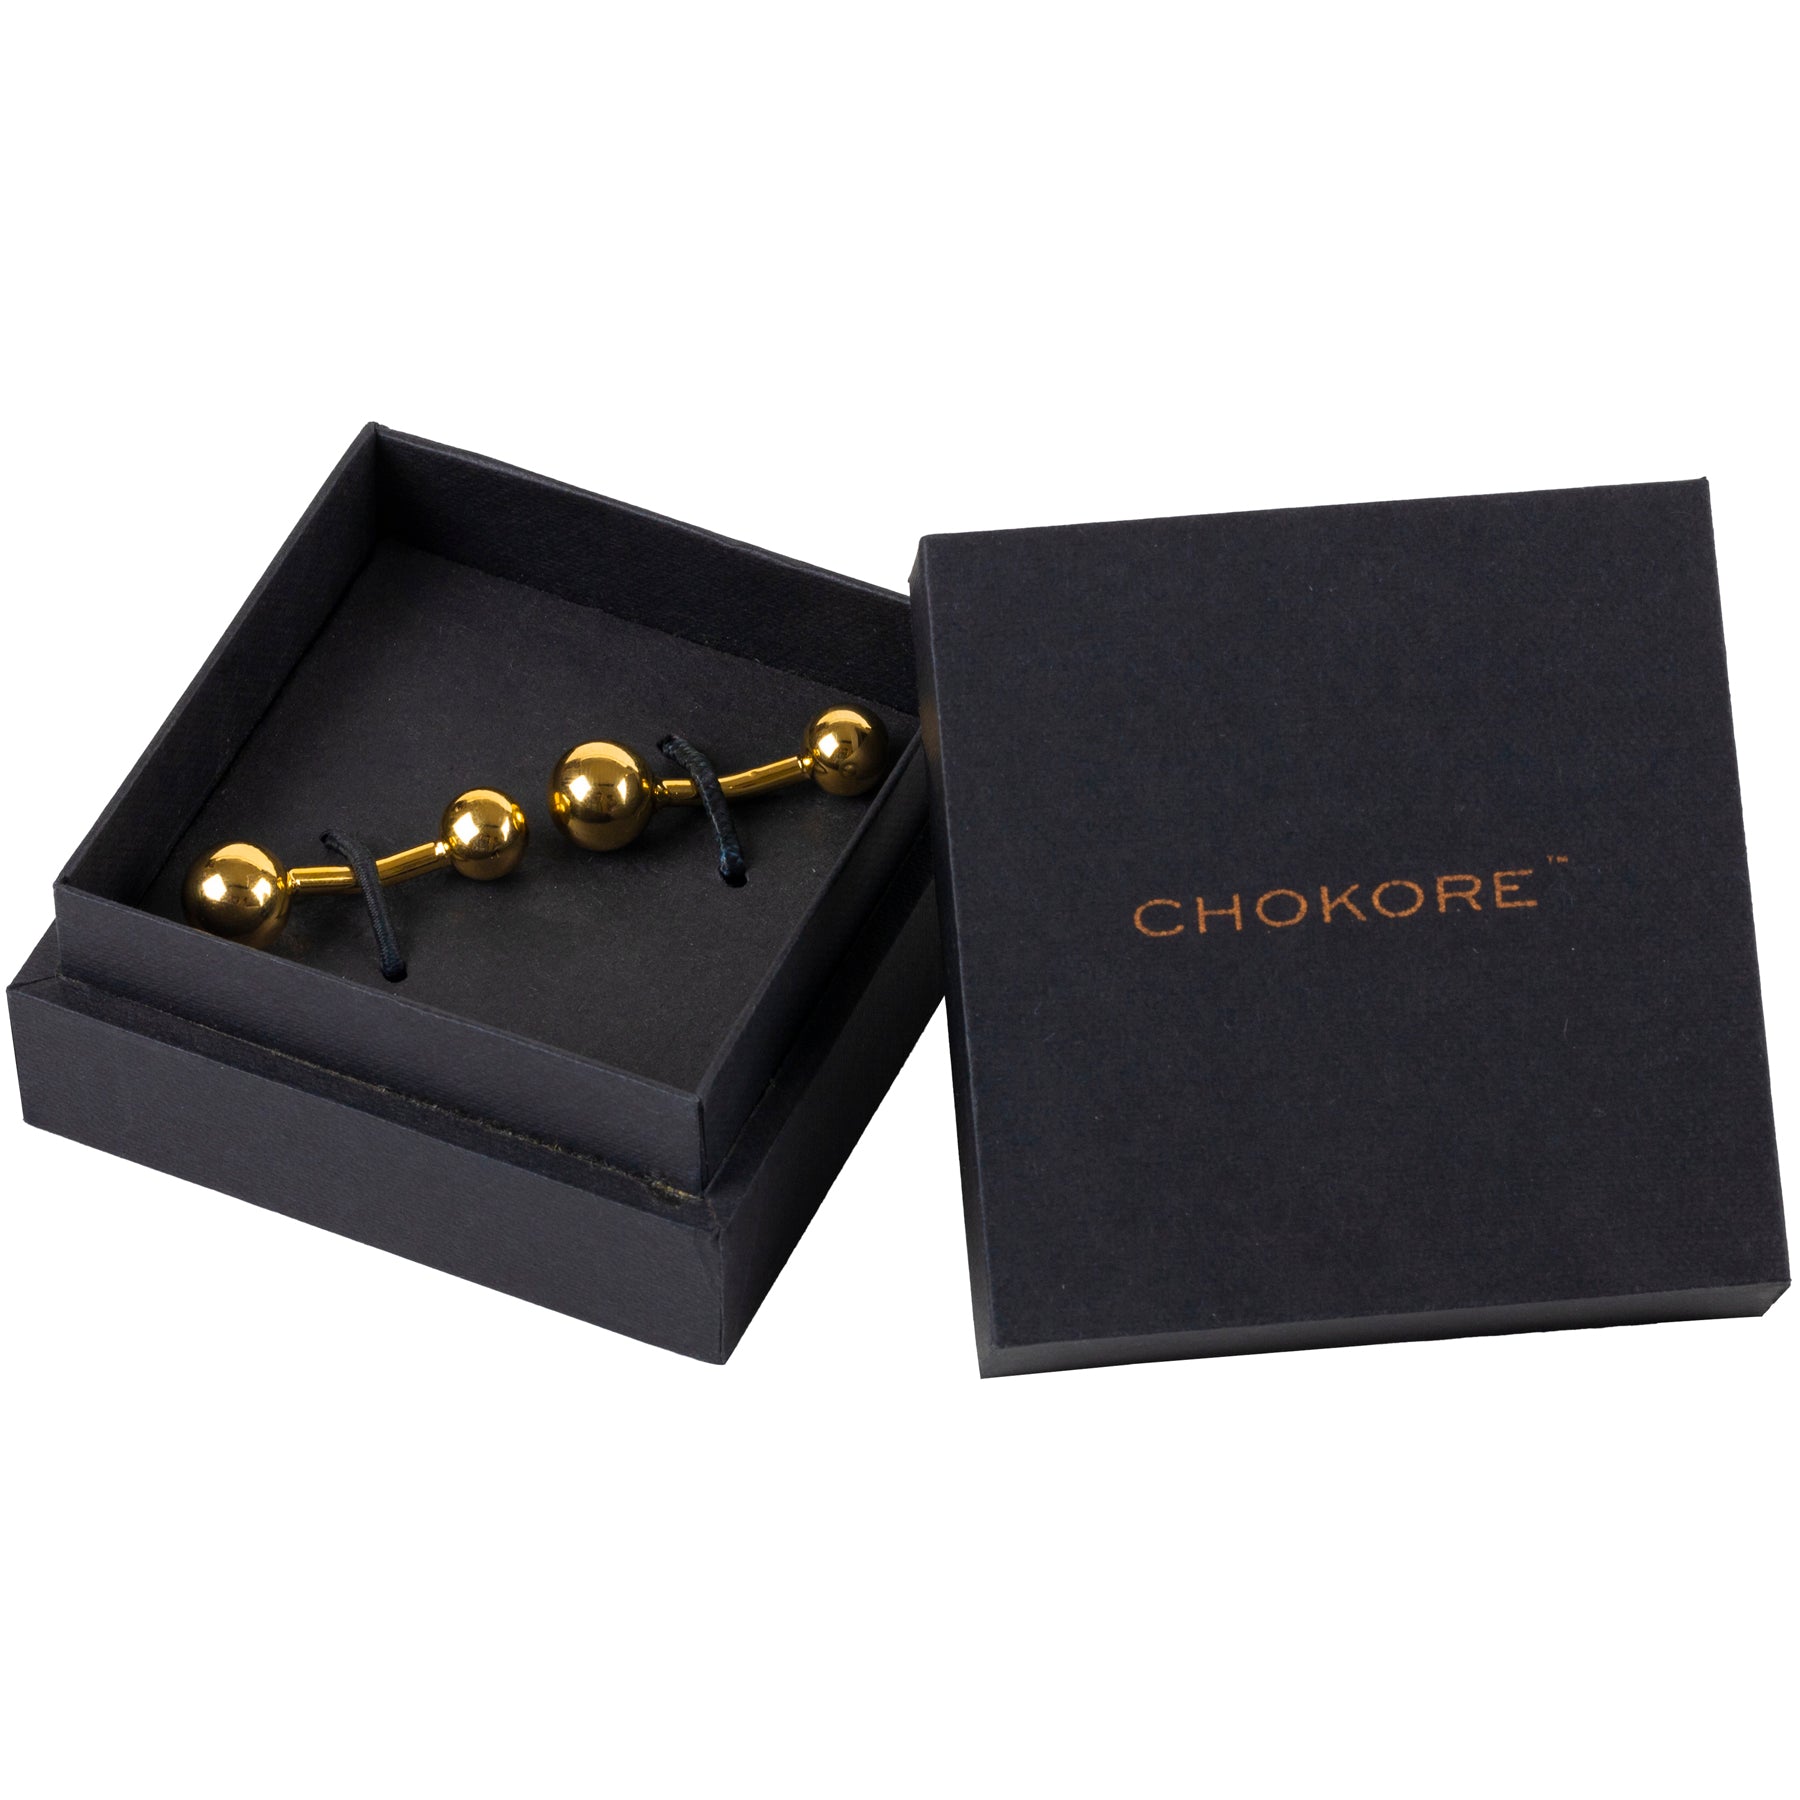 Chokore Gold Round Shaped Premium Range of Cufflinks